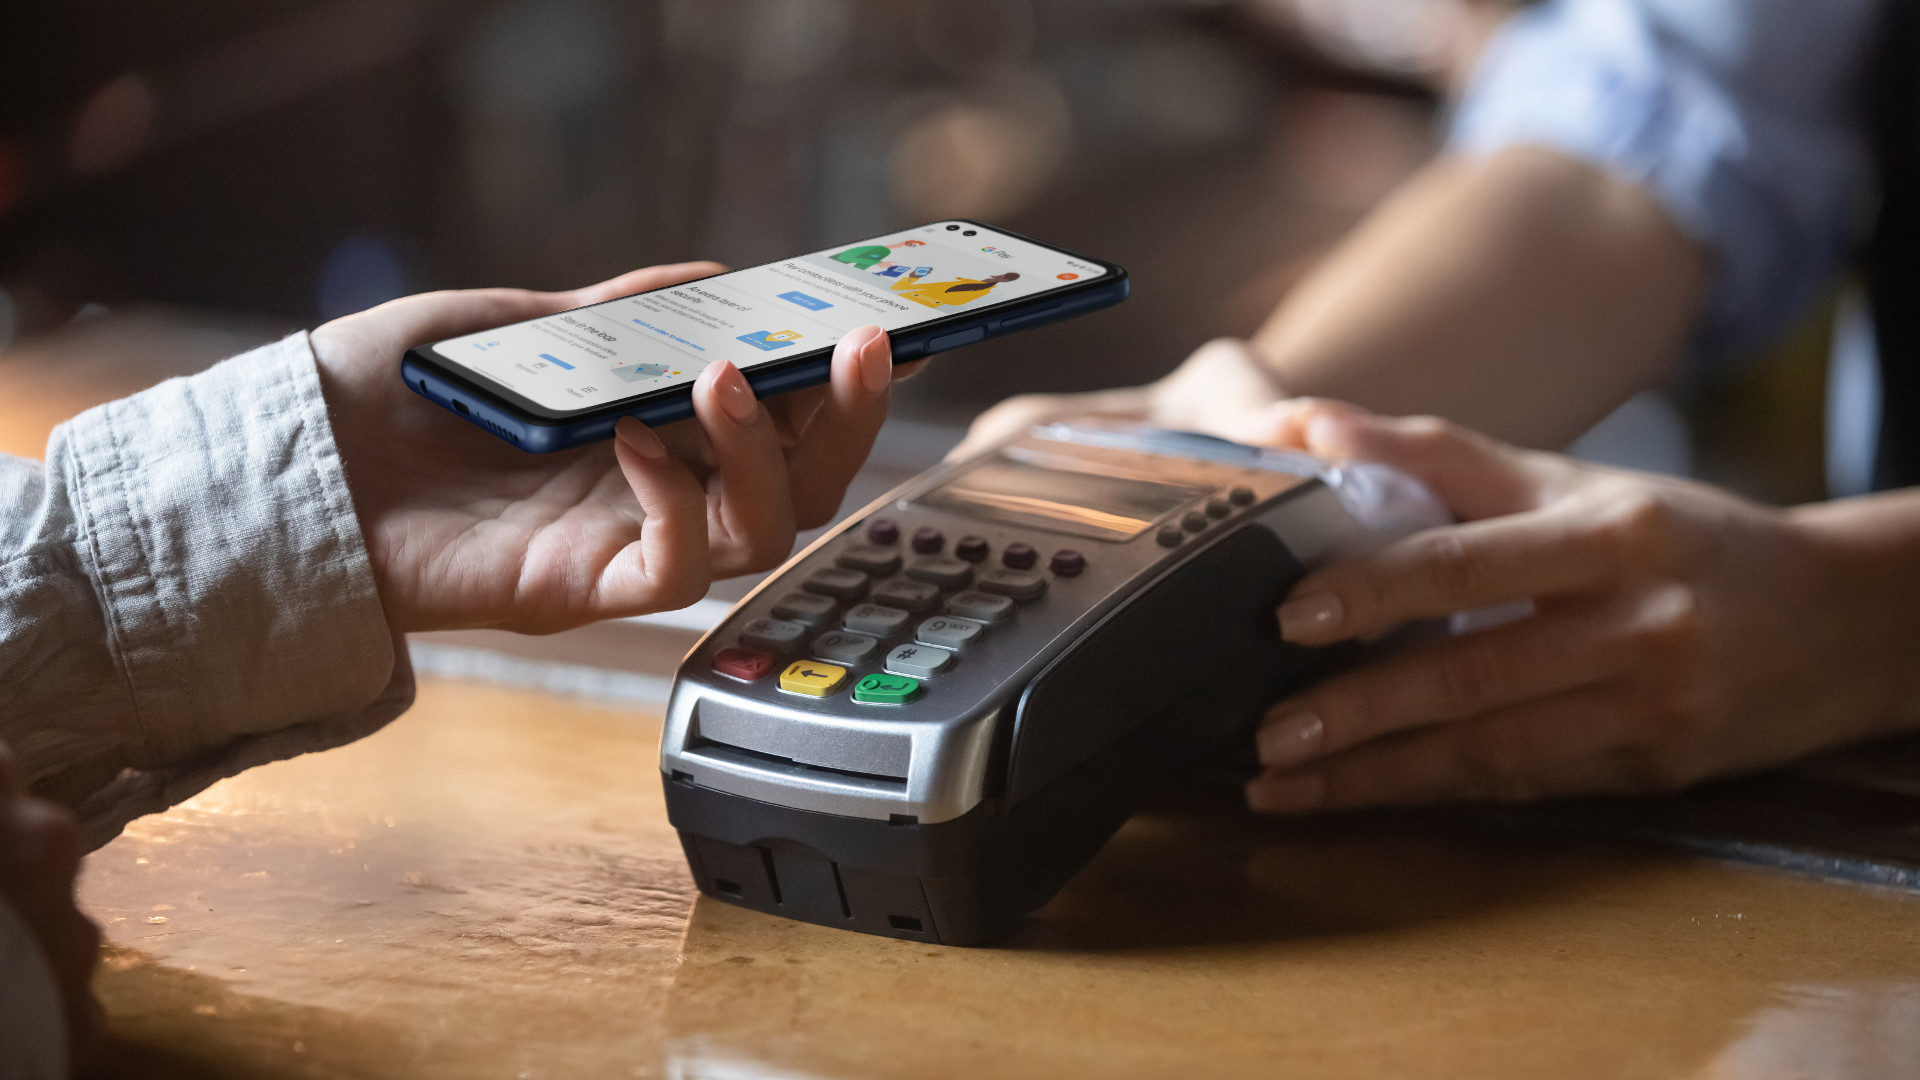 Nhà nghiên cứu bảo mật hack dễ dàng máy ATM bằng ứng dụng Android và giao thức thanh toán NFC - Ảnh 2.